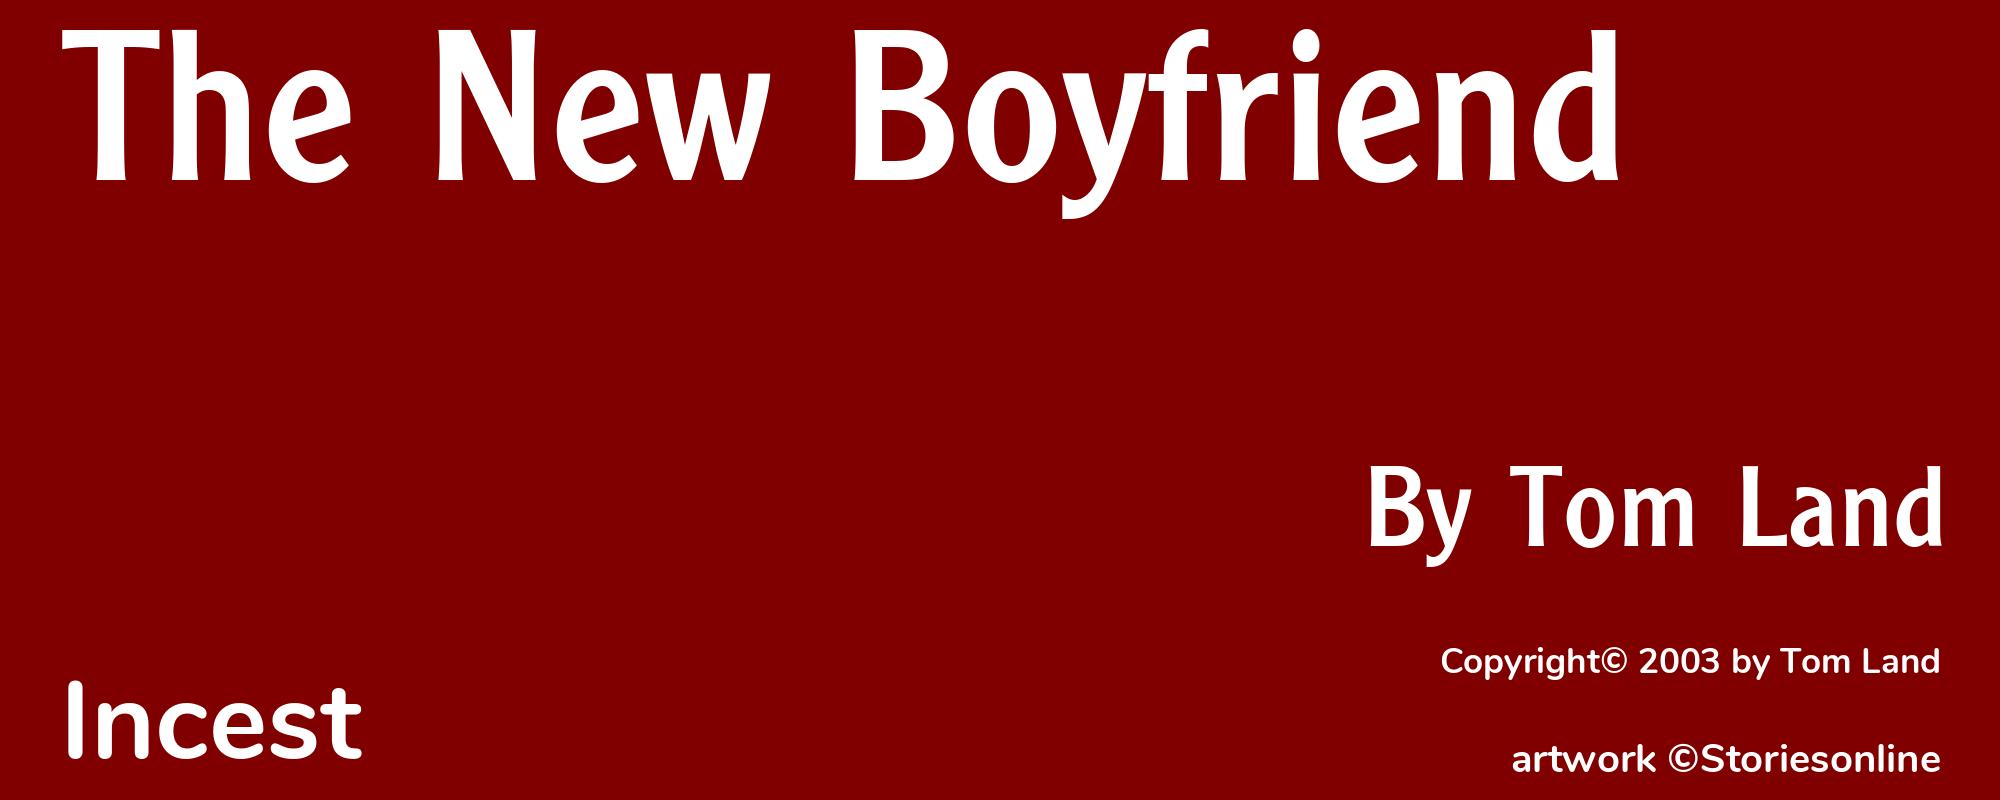 The New Boyfriend - Cover